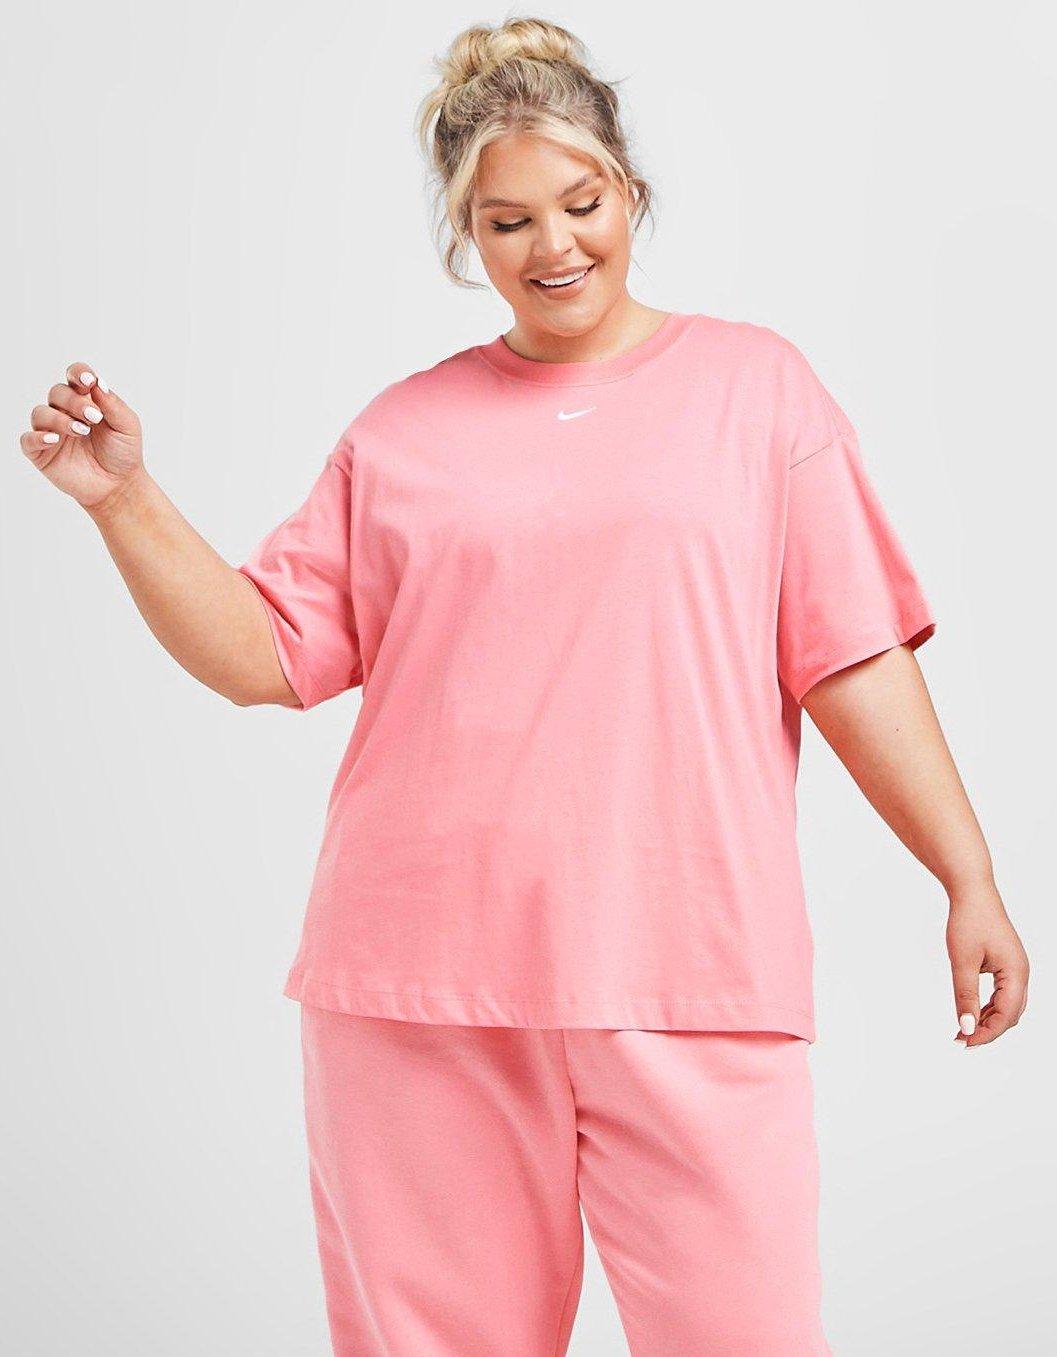 en person i rosa kläder från Nike